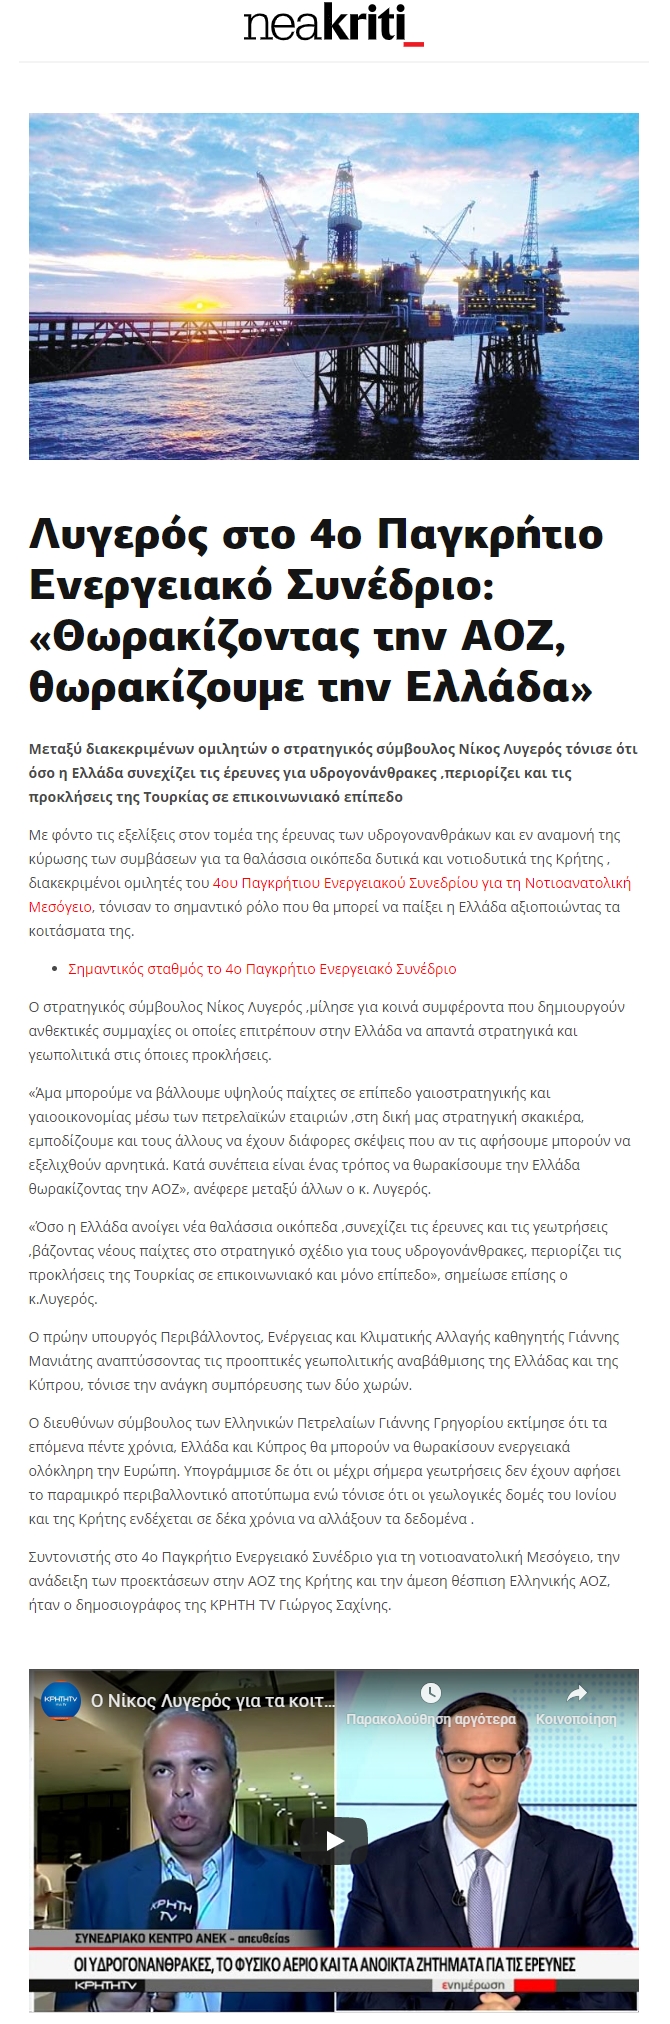 Λυγερός στο 4ο Παγκρήτιο Ενεργειακό Συνέδριο-Θωρακίζοντς την ΑΟΖ θωρακίζουμε την Ελλάδα, neakriti, 08/09/2019 - Publication